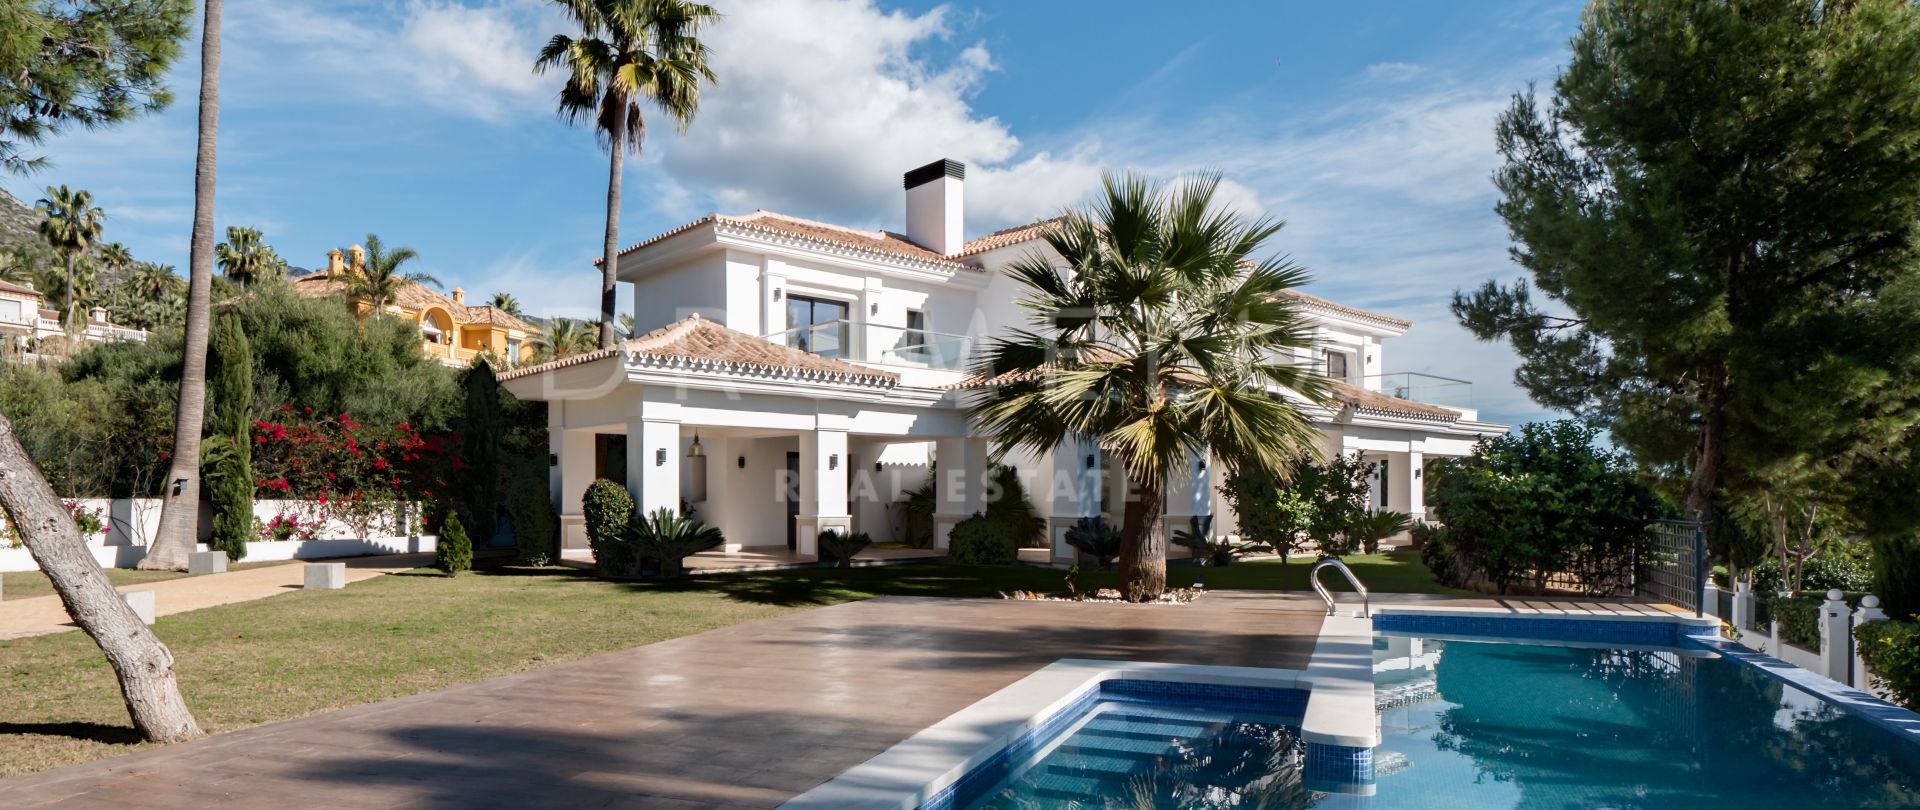 Villa Azure - New modern Mediterranean luxury house with exquisite look, Sierra Blanca, Marbella's Golden Mile